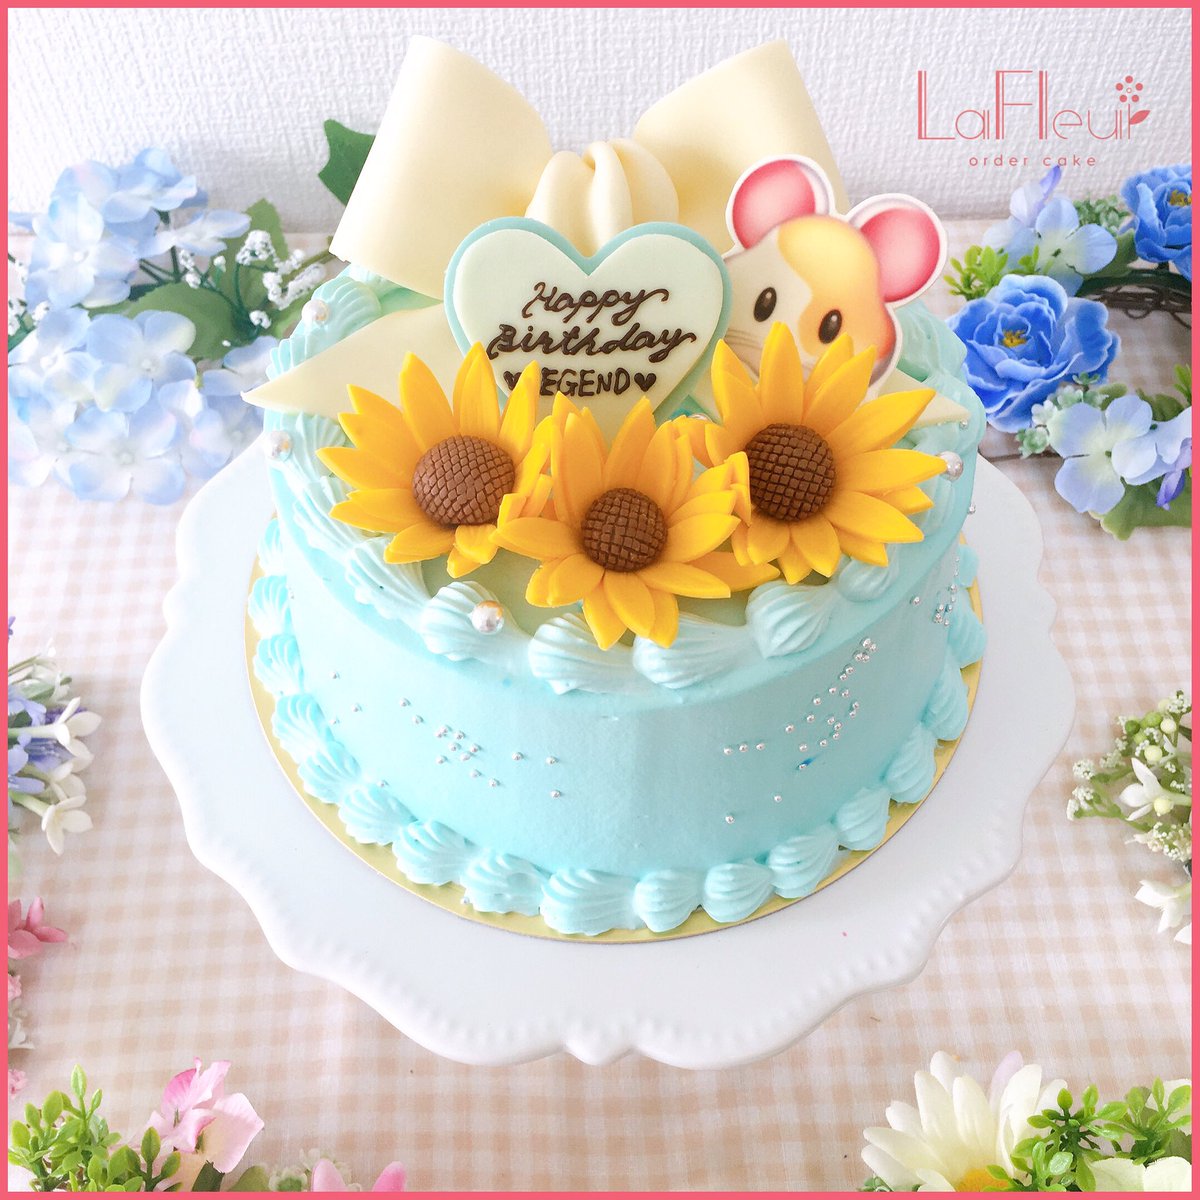 Lafleur Ordercake On Twitter リボンケーキ 世界に一つだけのケーキをあの人へ お菓子 Happybirthday お菓子作り好きな人と繋がりたい オーダーケーキ 埼玉県 大宮 ケーキ Cake